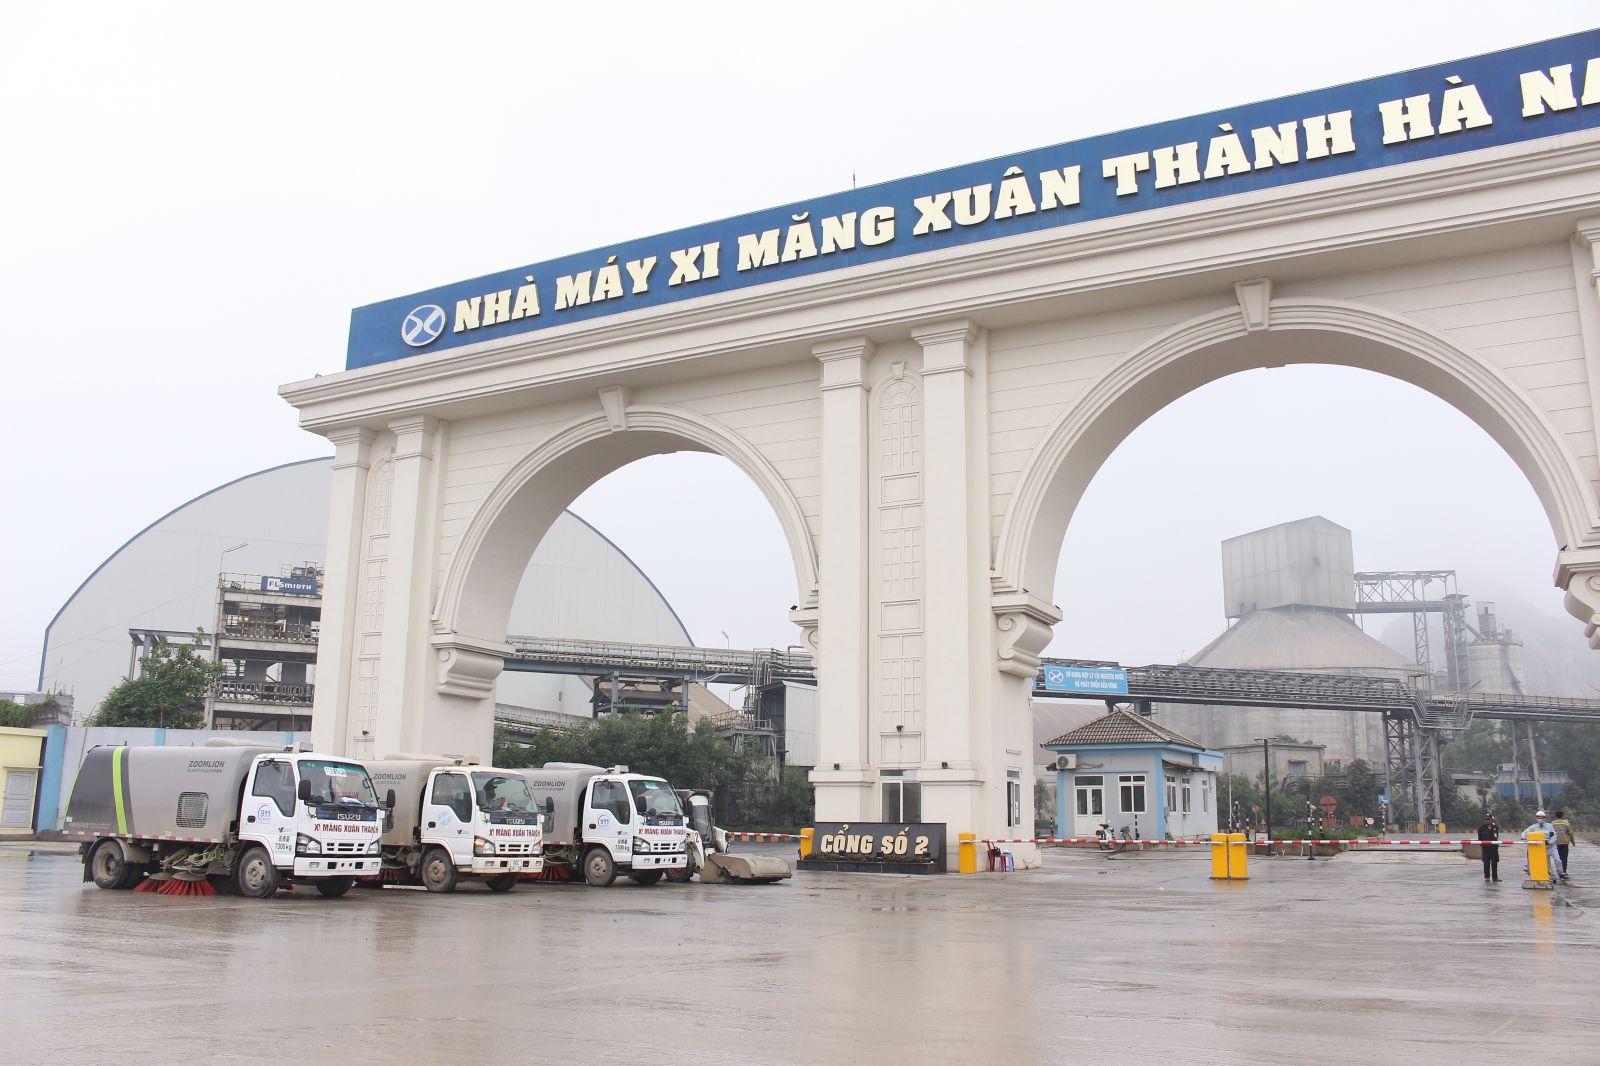 Đội xe quét dọn, vệ sinh môi trường của nhà máy Xi măng Xuân Thành Hà Nam.